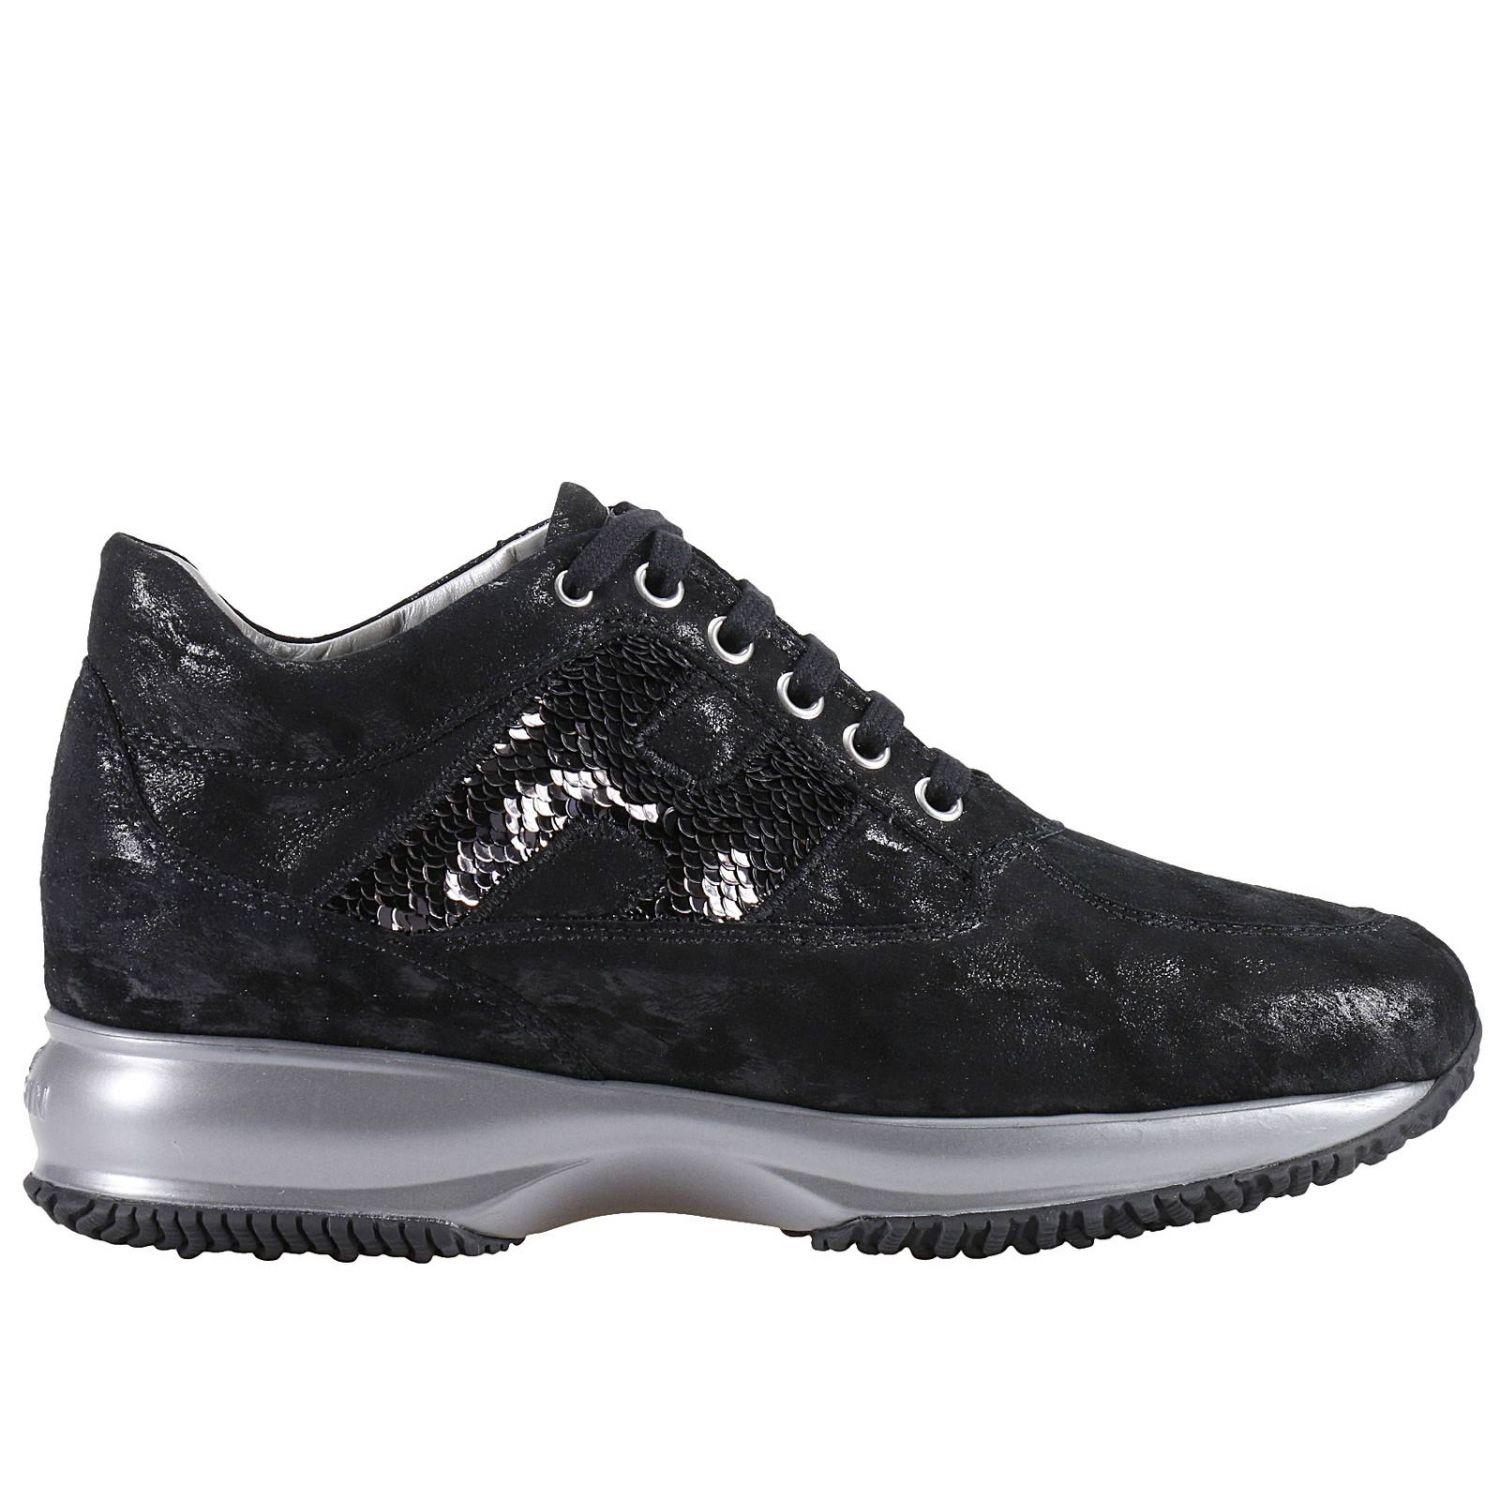 Lyst - Hogan Sneakers Shoes Women in Black